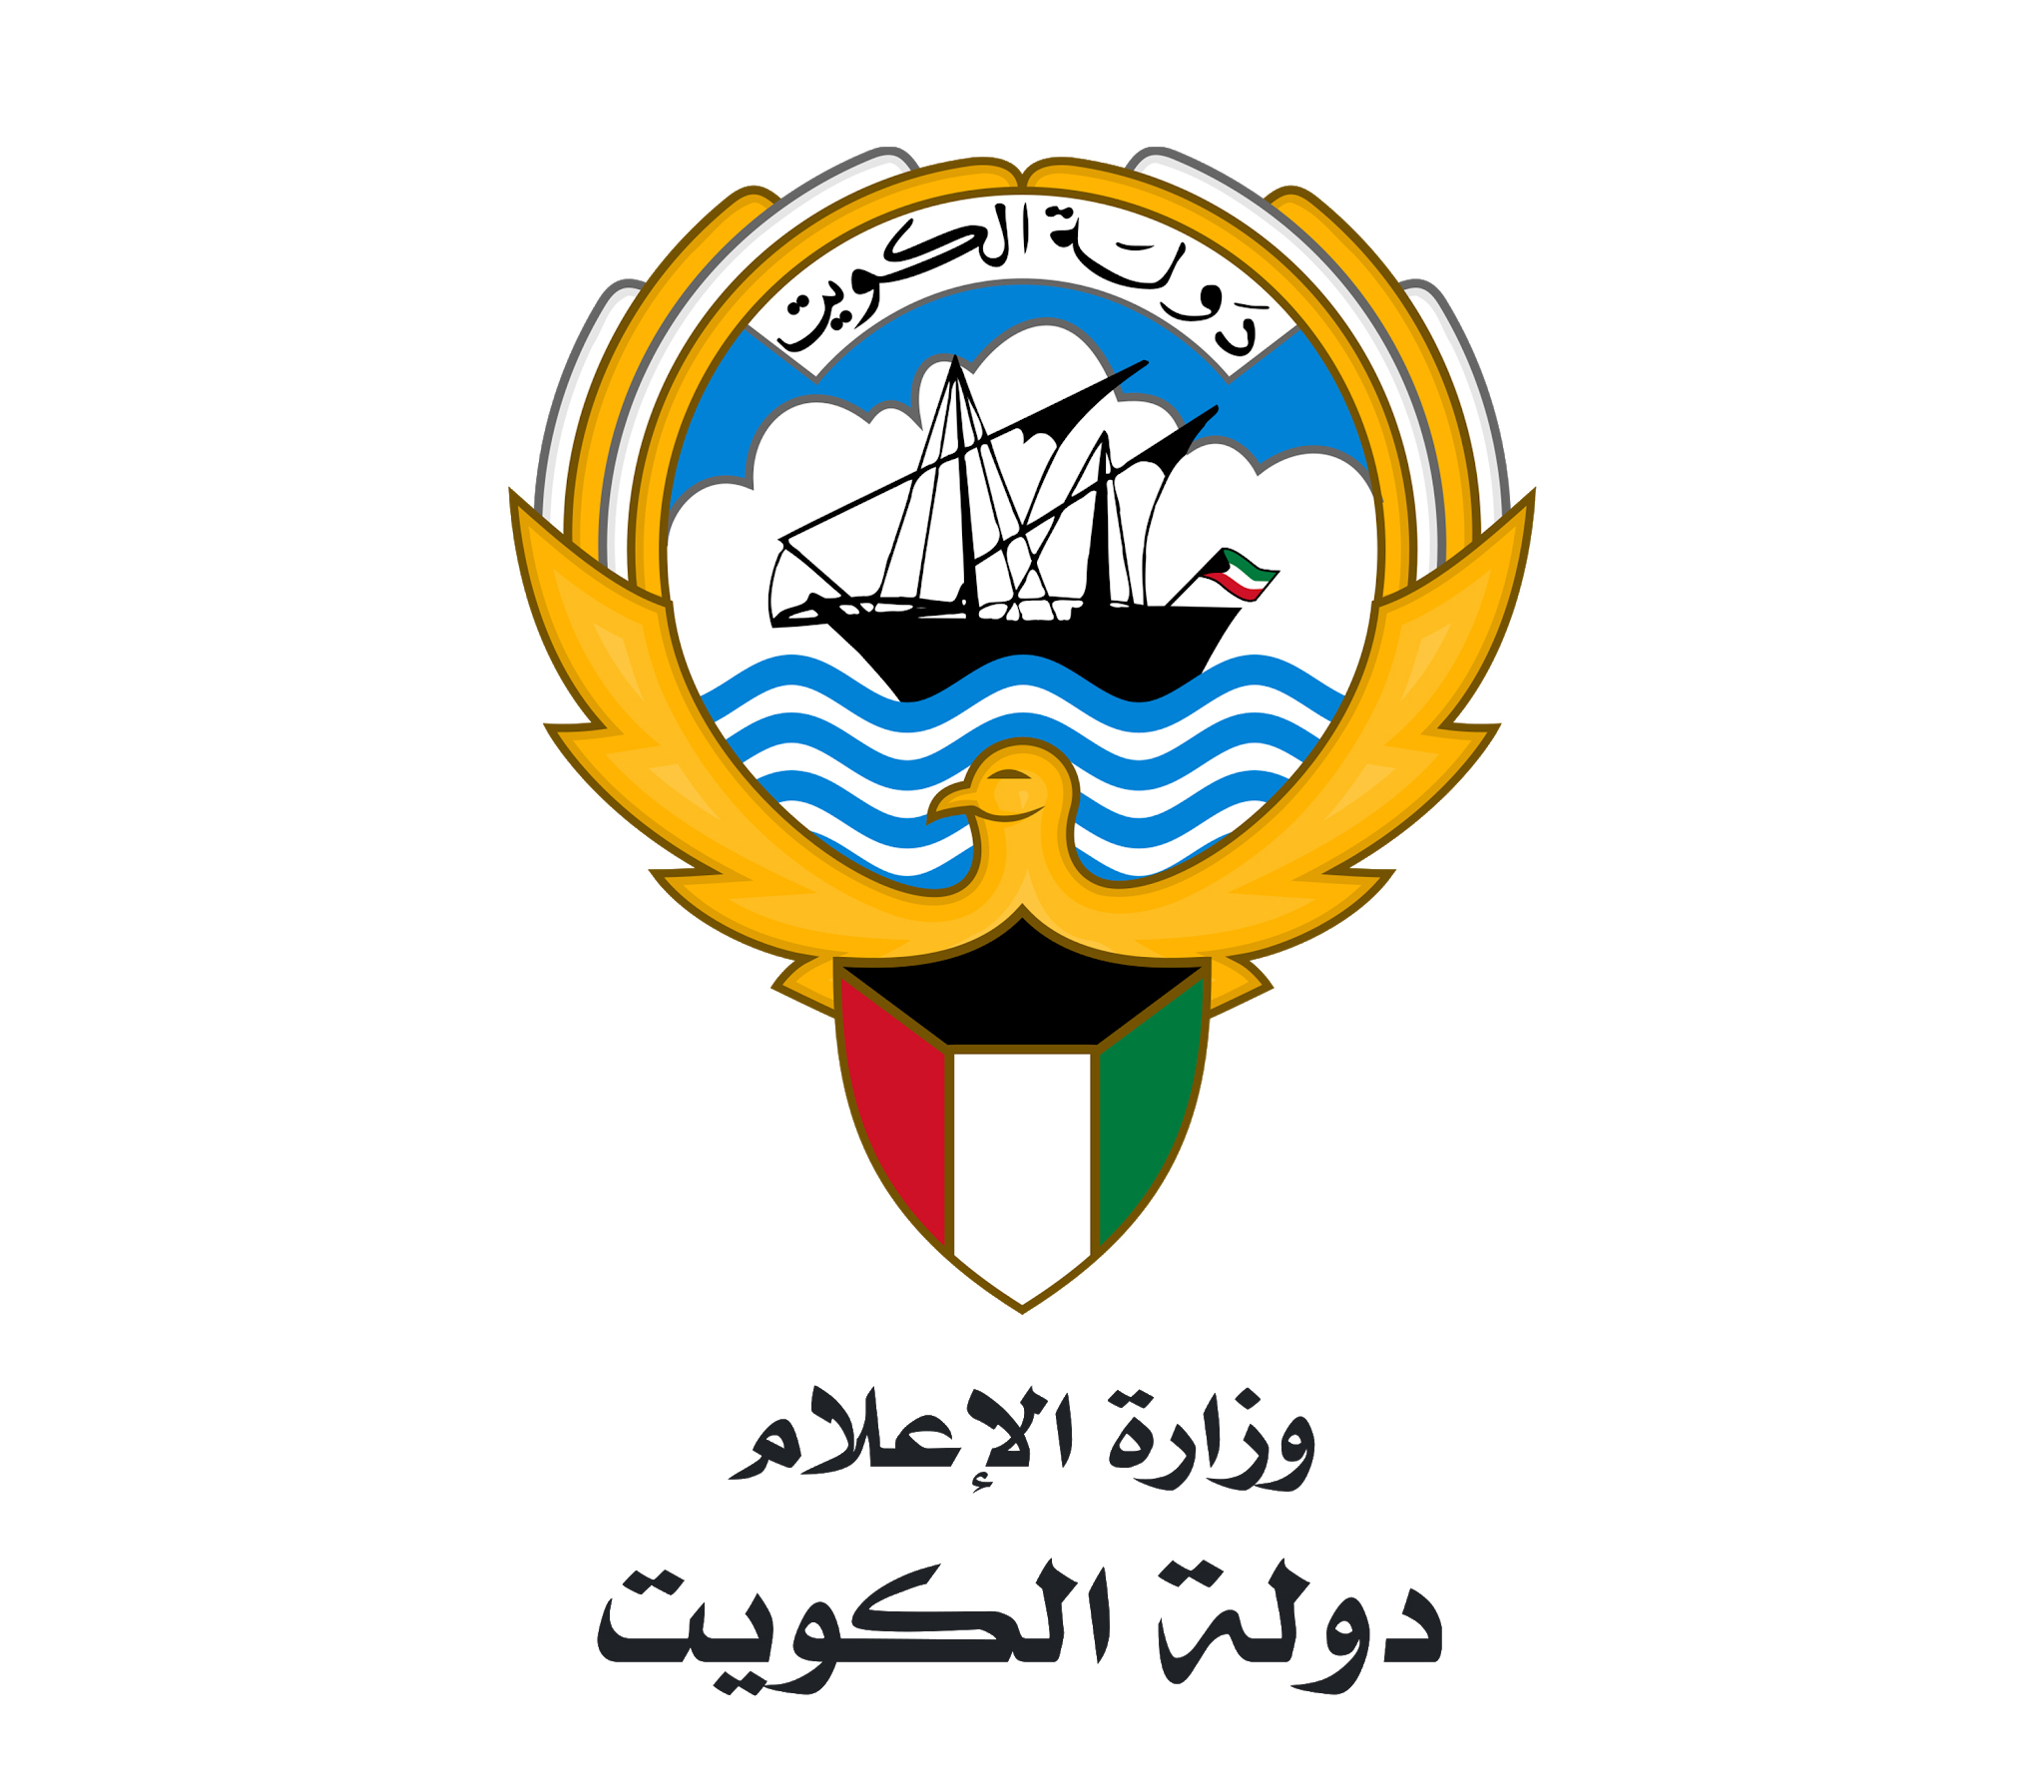 وزارة الإعلام: سنتصدى لأي عمل فني يسيء إلى دولة الكويت وشعبها                                                                                                                                                                                             